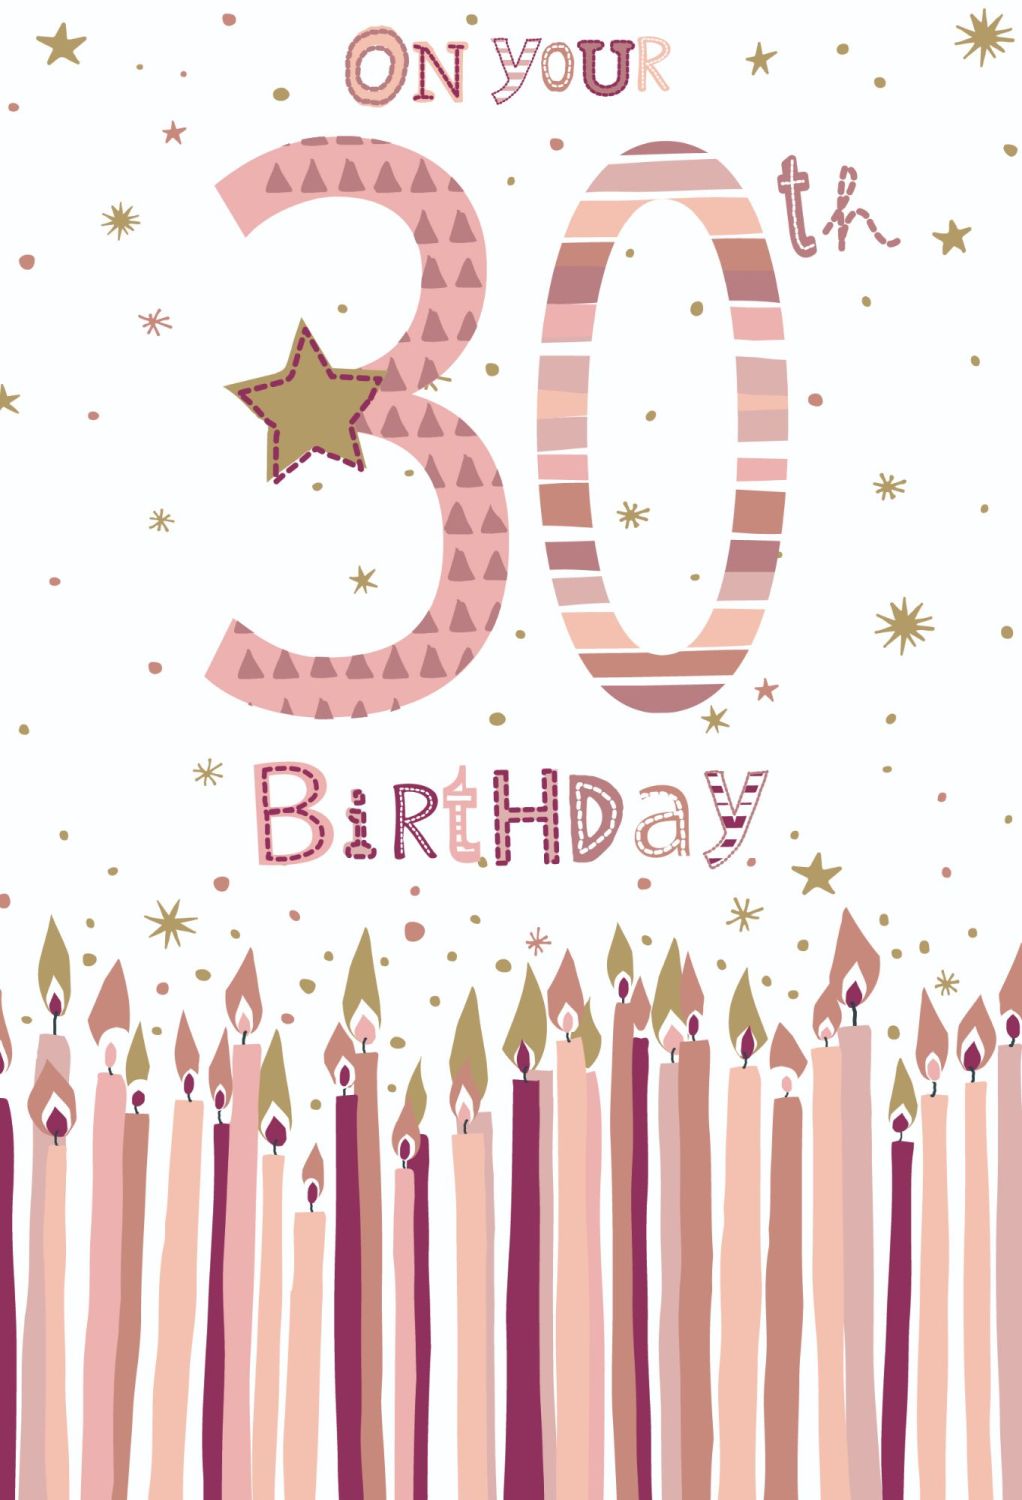 30th Birthday Cards - ON Your 30th BIRTHDAY - 30th Birthday CARDS - BIRTHDA